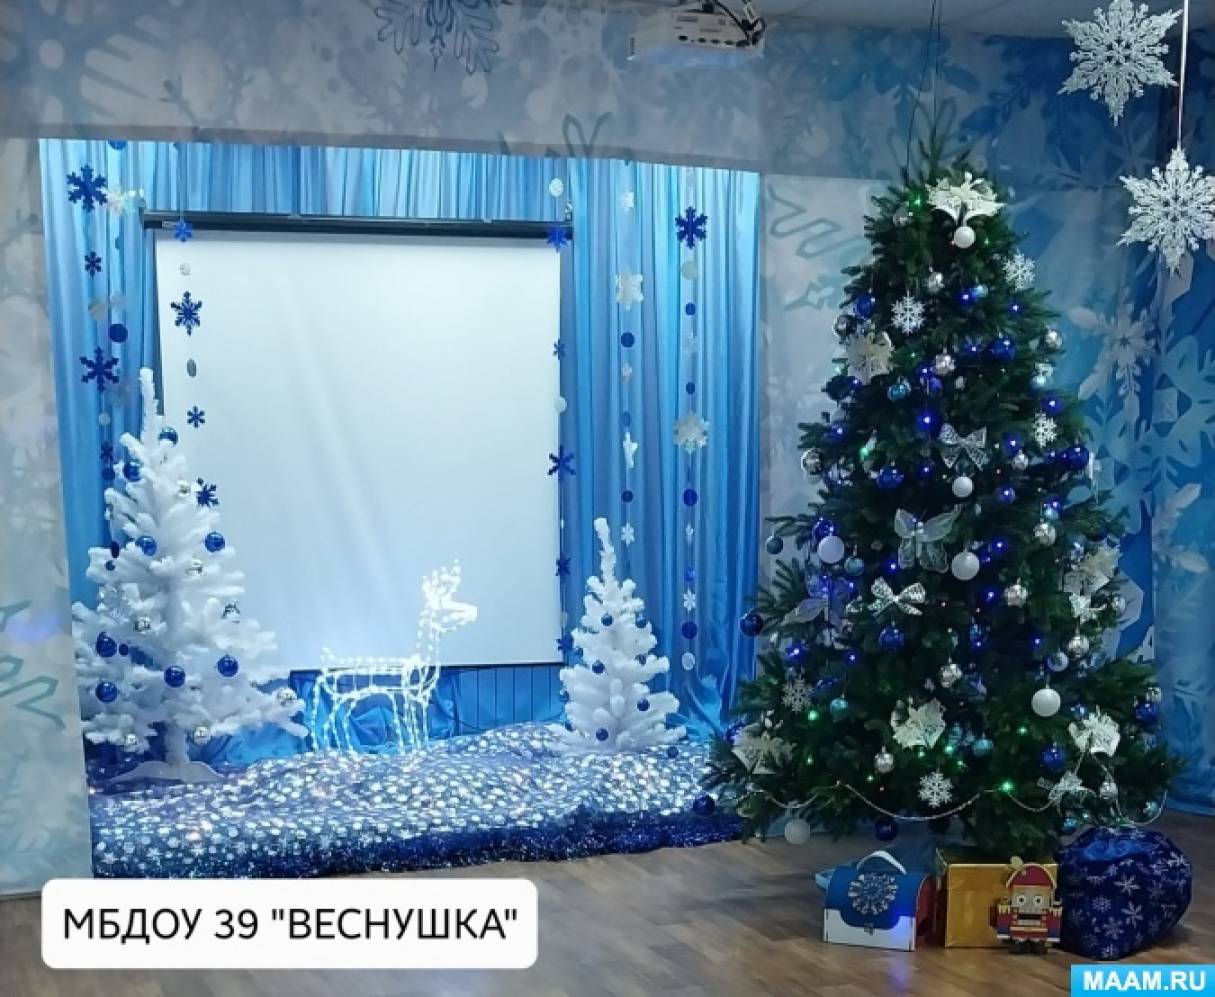 Новогодний декор для дома и украшения купить оптом и в розницу в Москве